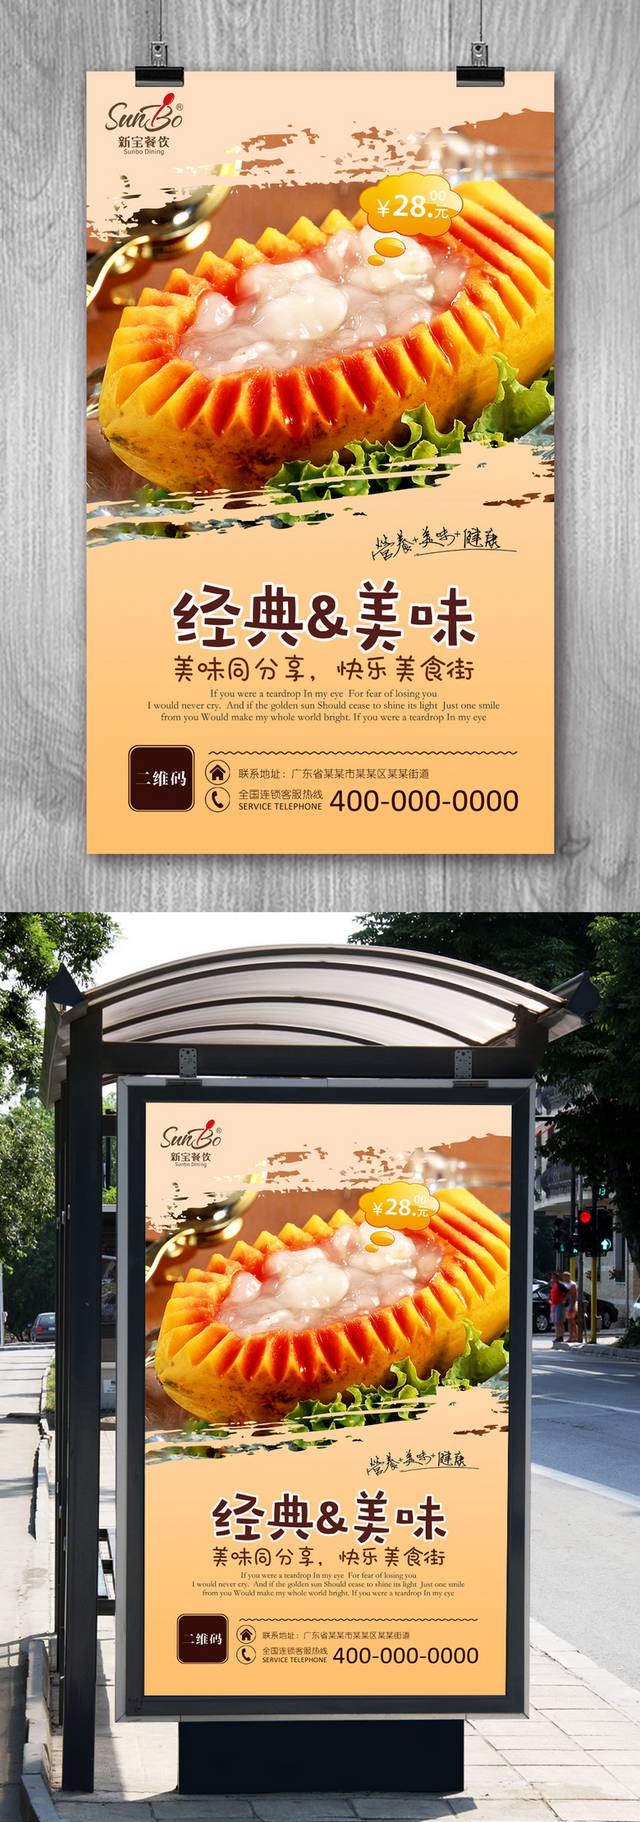 高清雪蛤保健品宣传海报